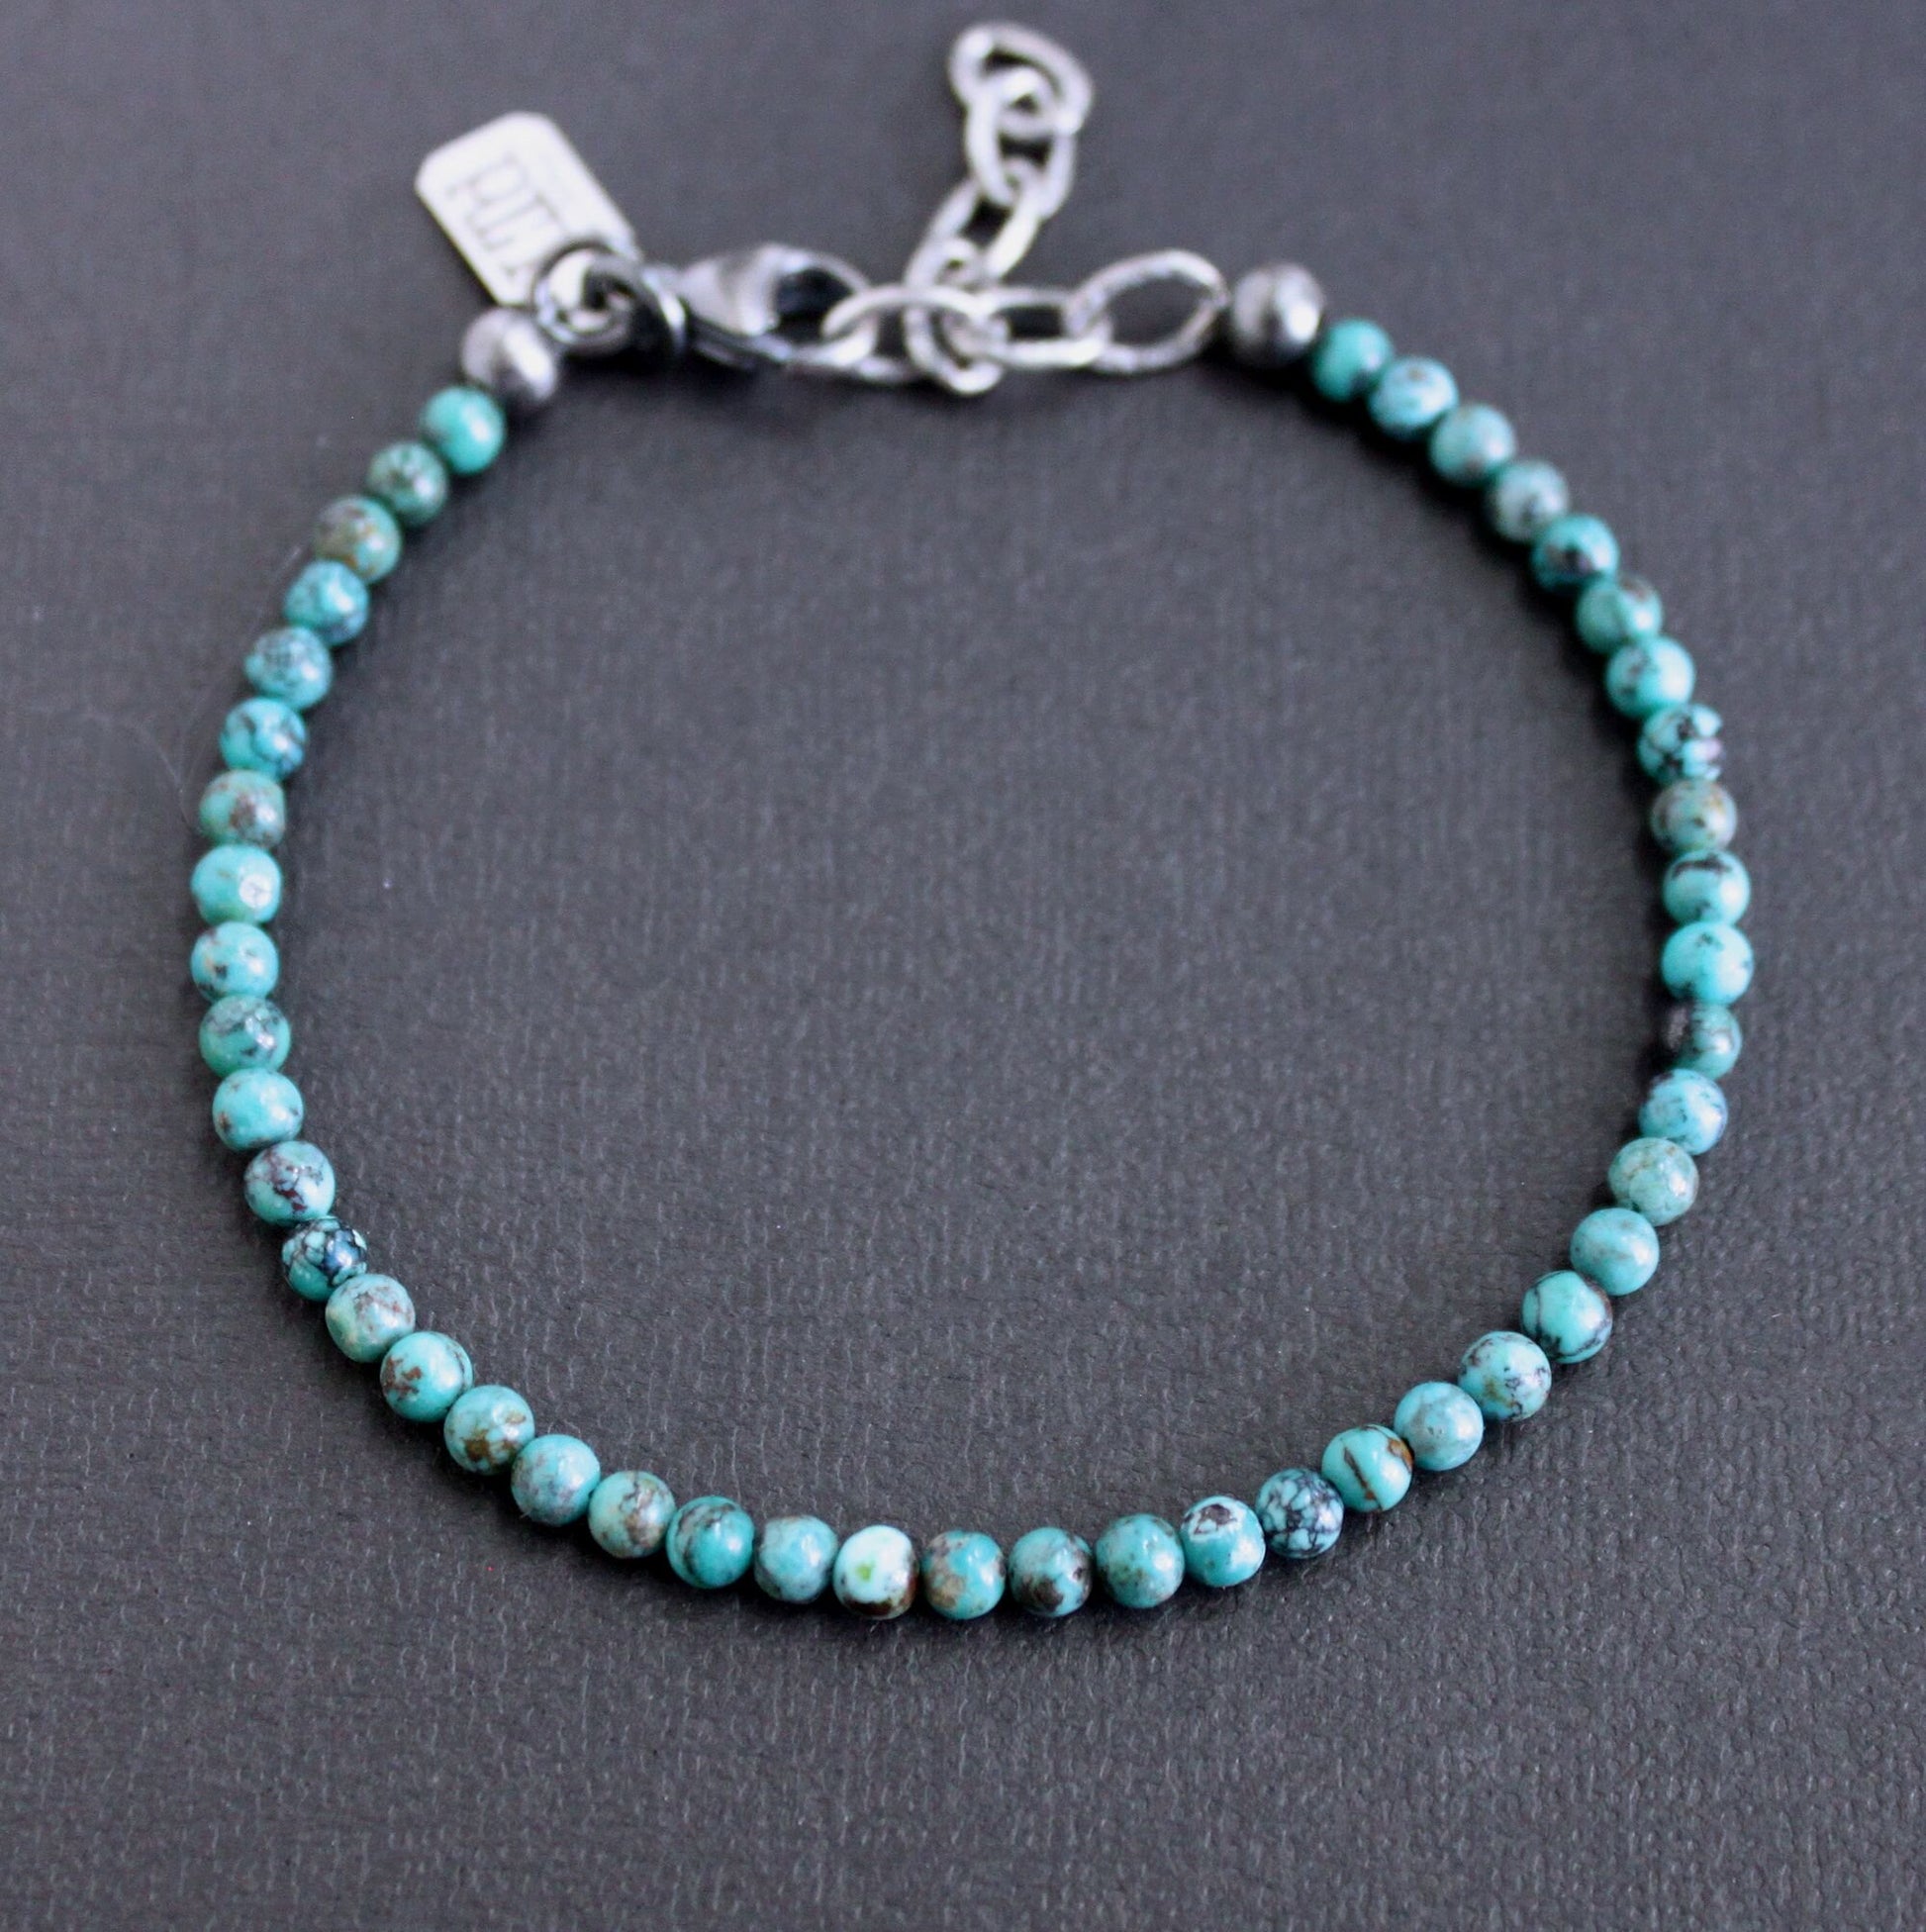 Men's 4mm turquoise bead bracelet